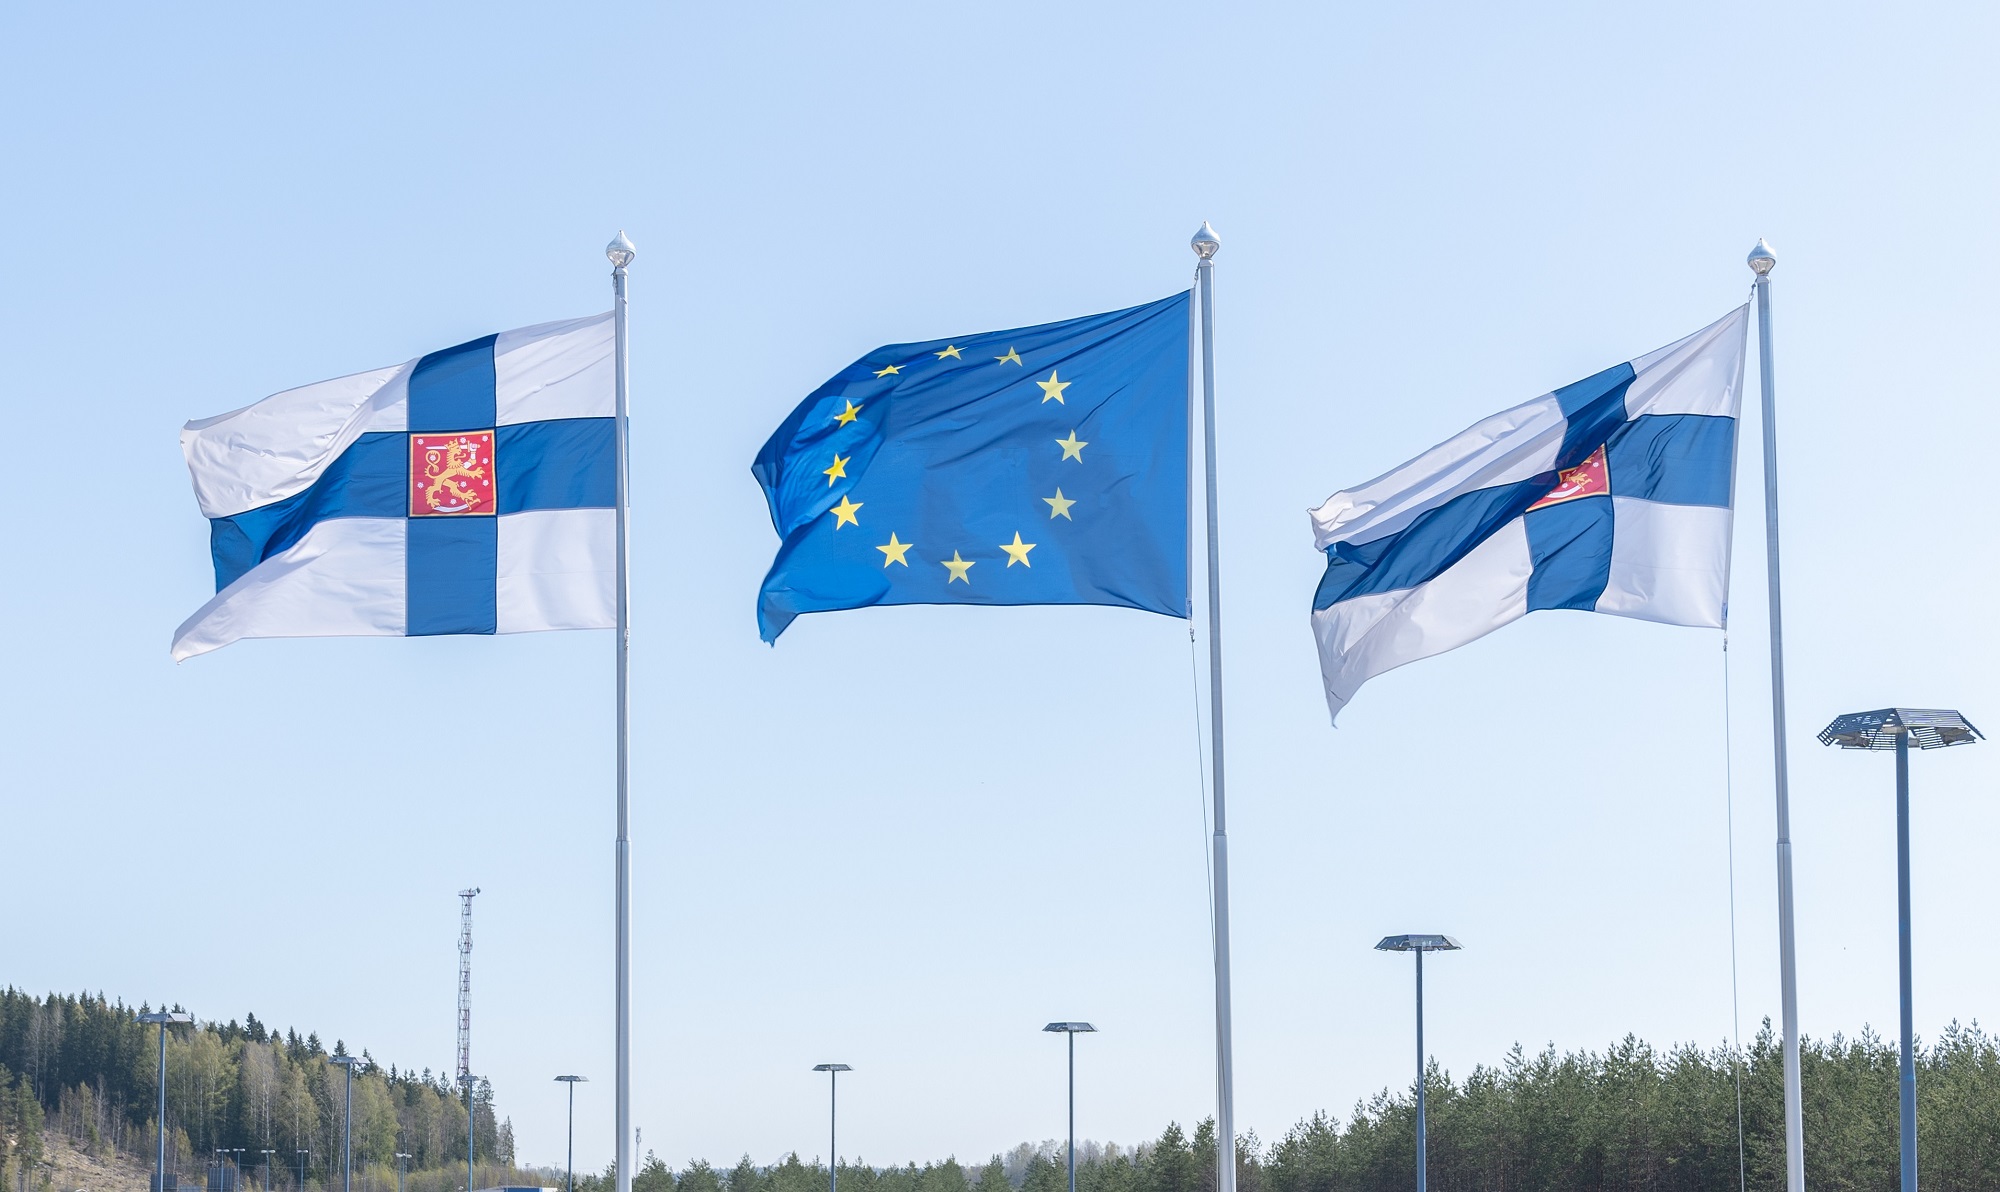 Kaksi Suomen lippua ja Euroopan unionin lippu vierekkäin lipputangoissa.